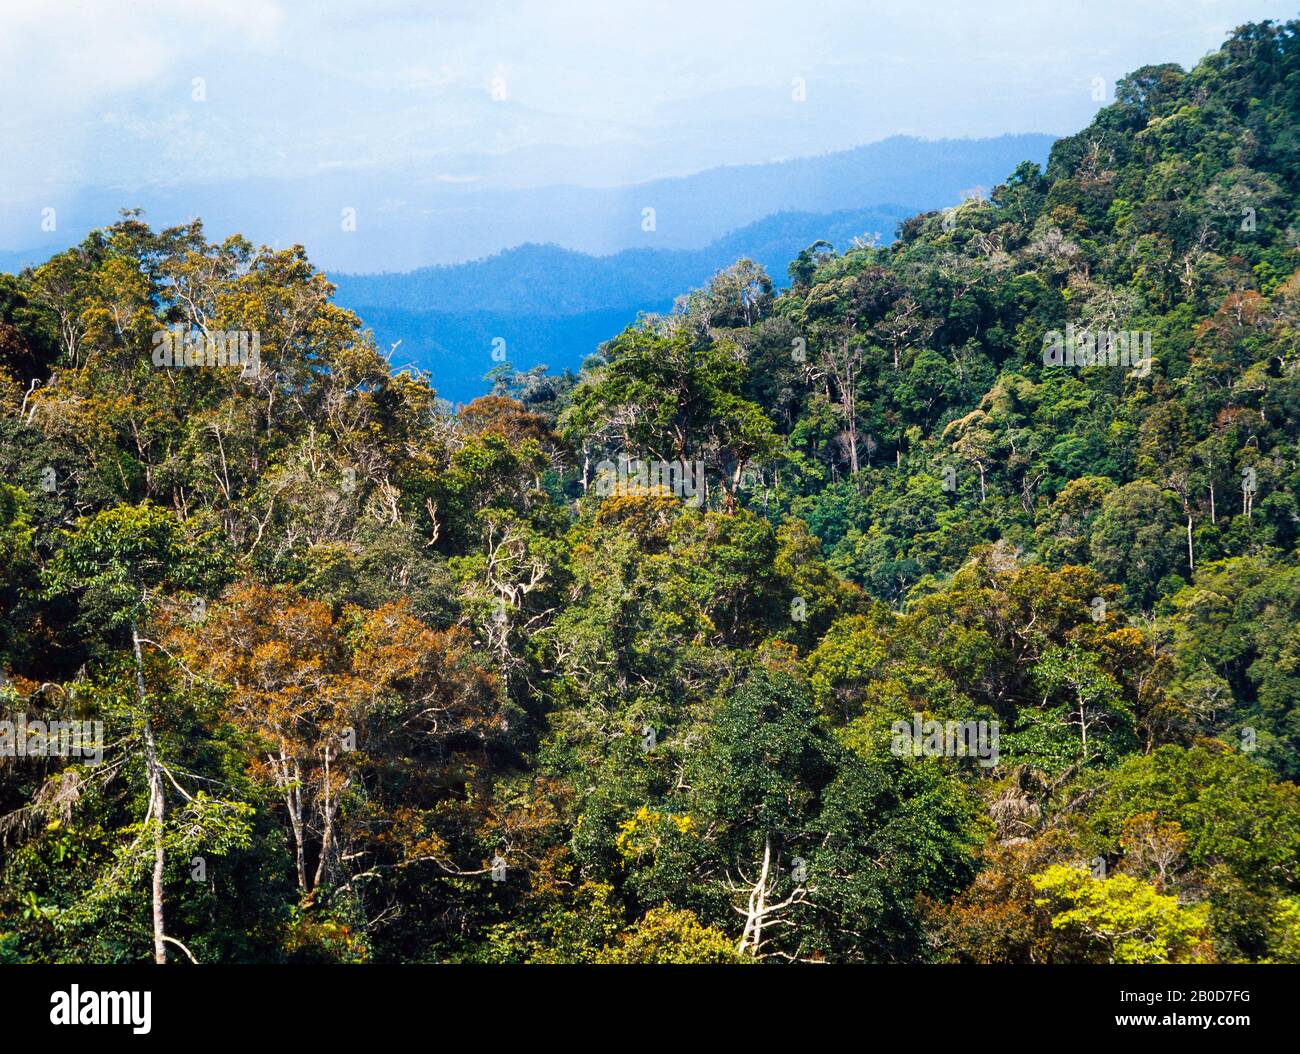 Paysage de jungle des Highlands, Malaisie, Fraser's Hill près de Kuala Lumpur, collines couvertes de jungle dense Banque D'Images